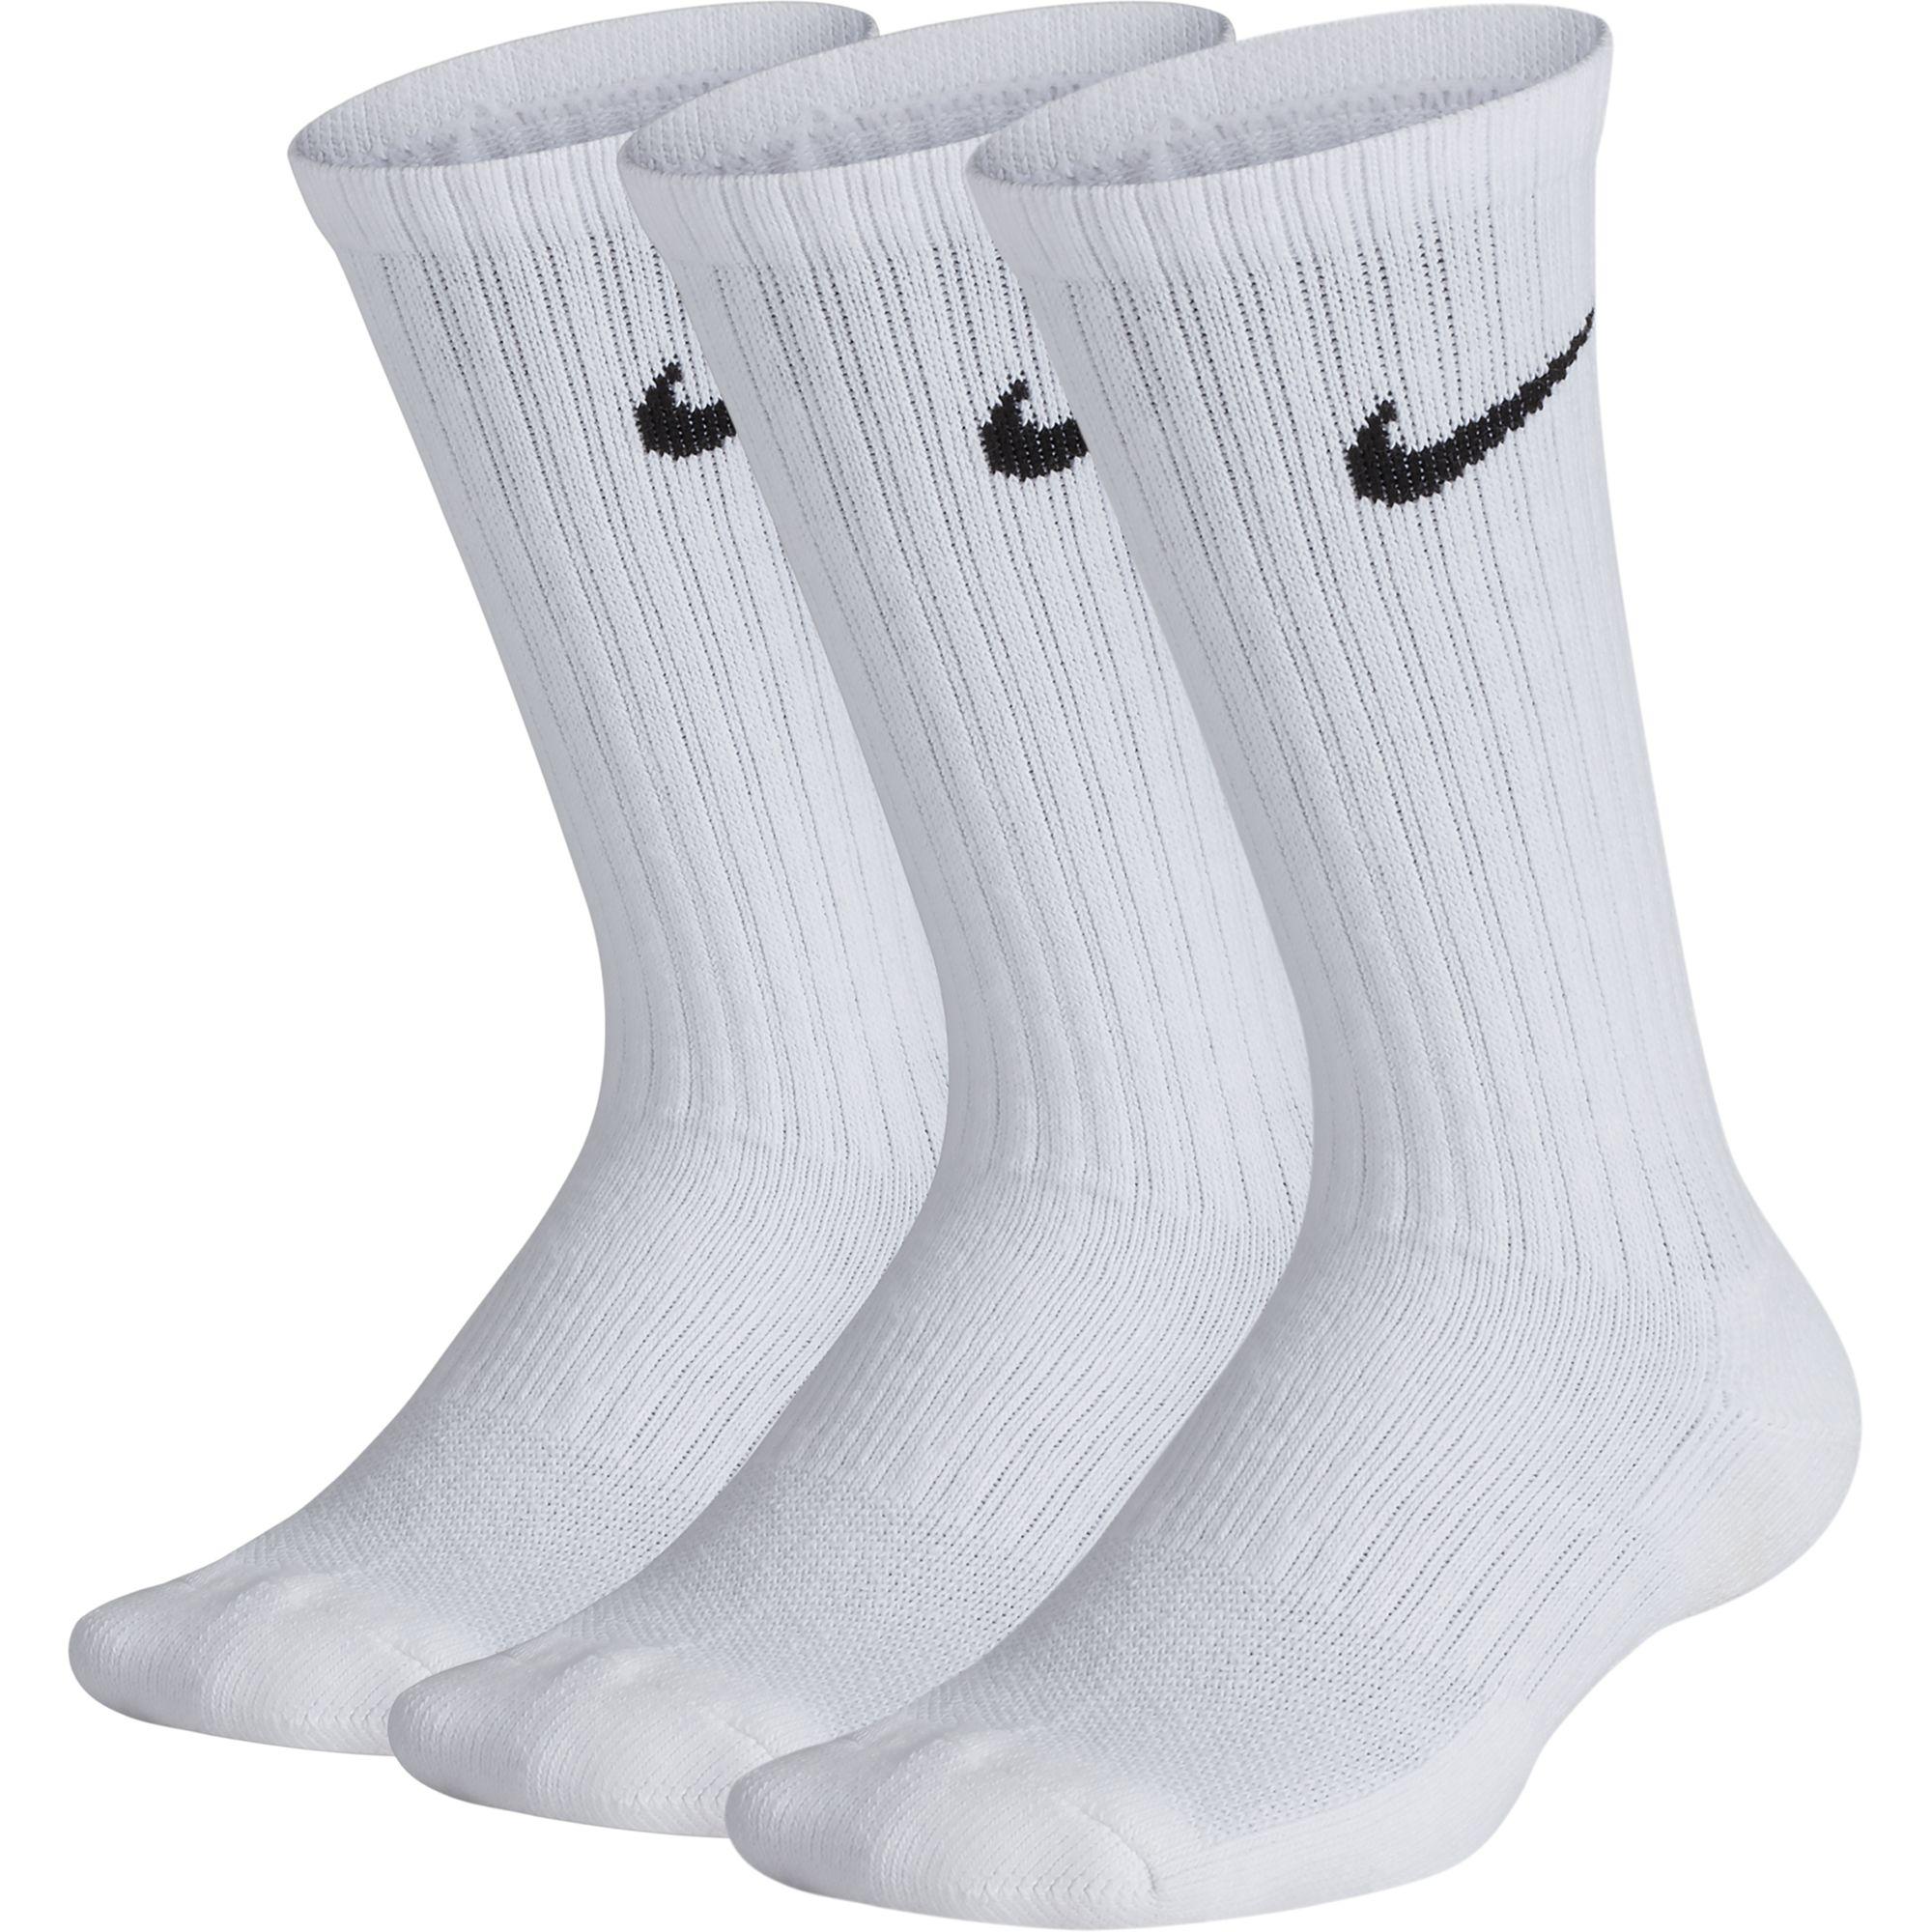 white training socks